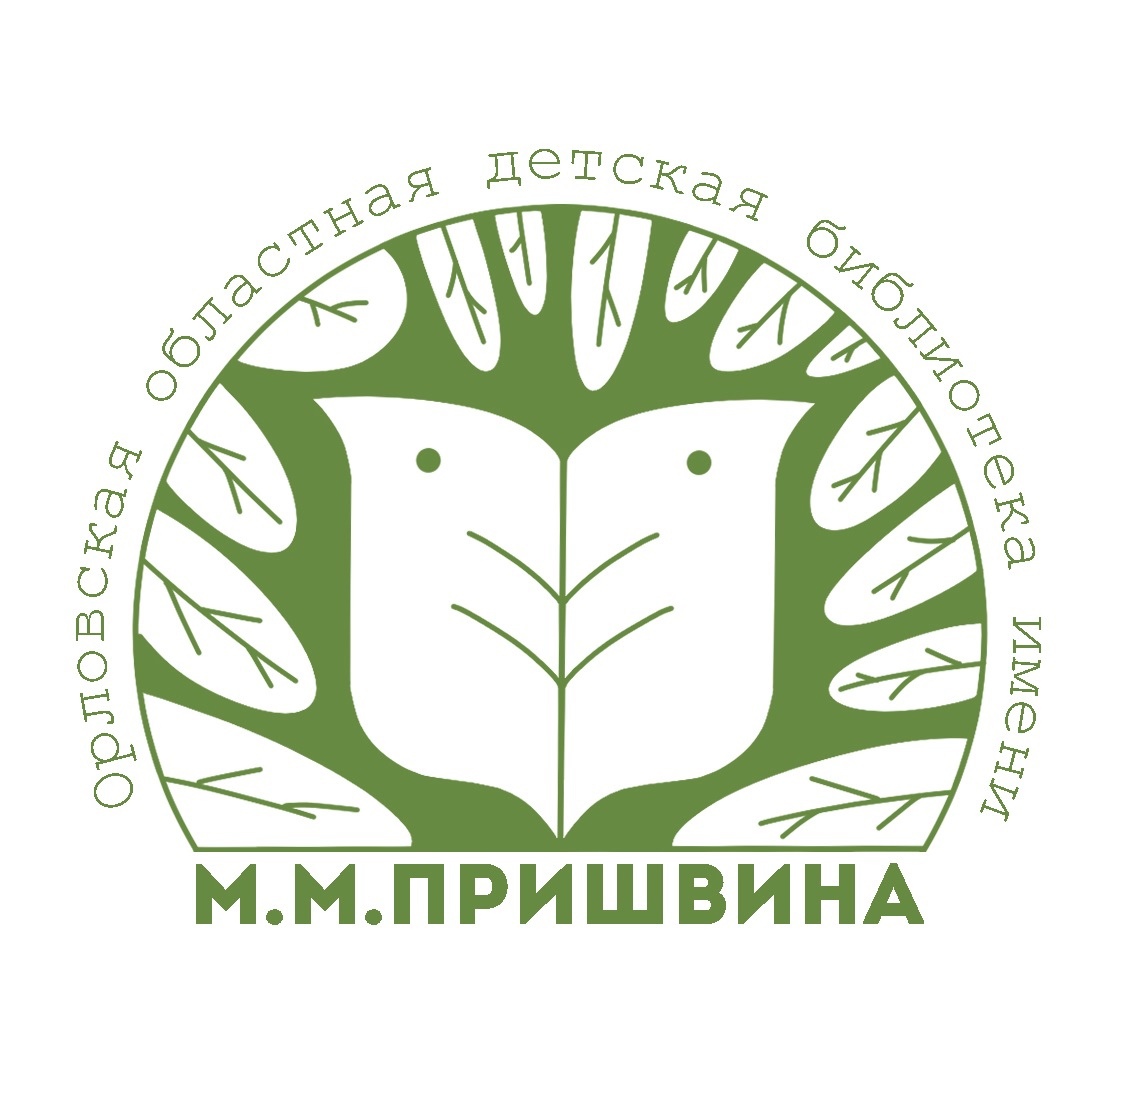 Орловская областная детская библиотека им. М.М.Пришвина